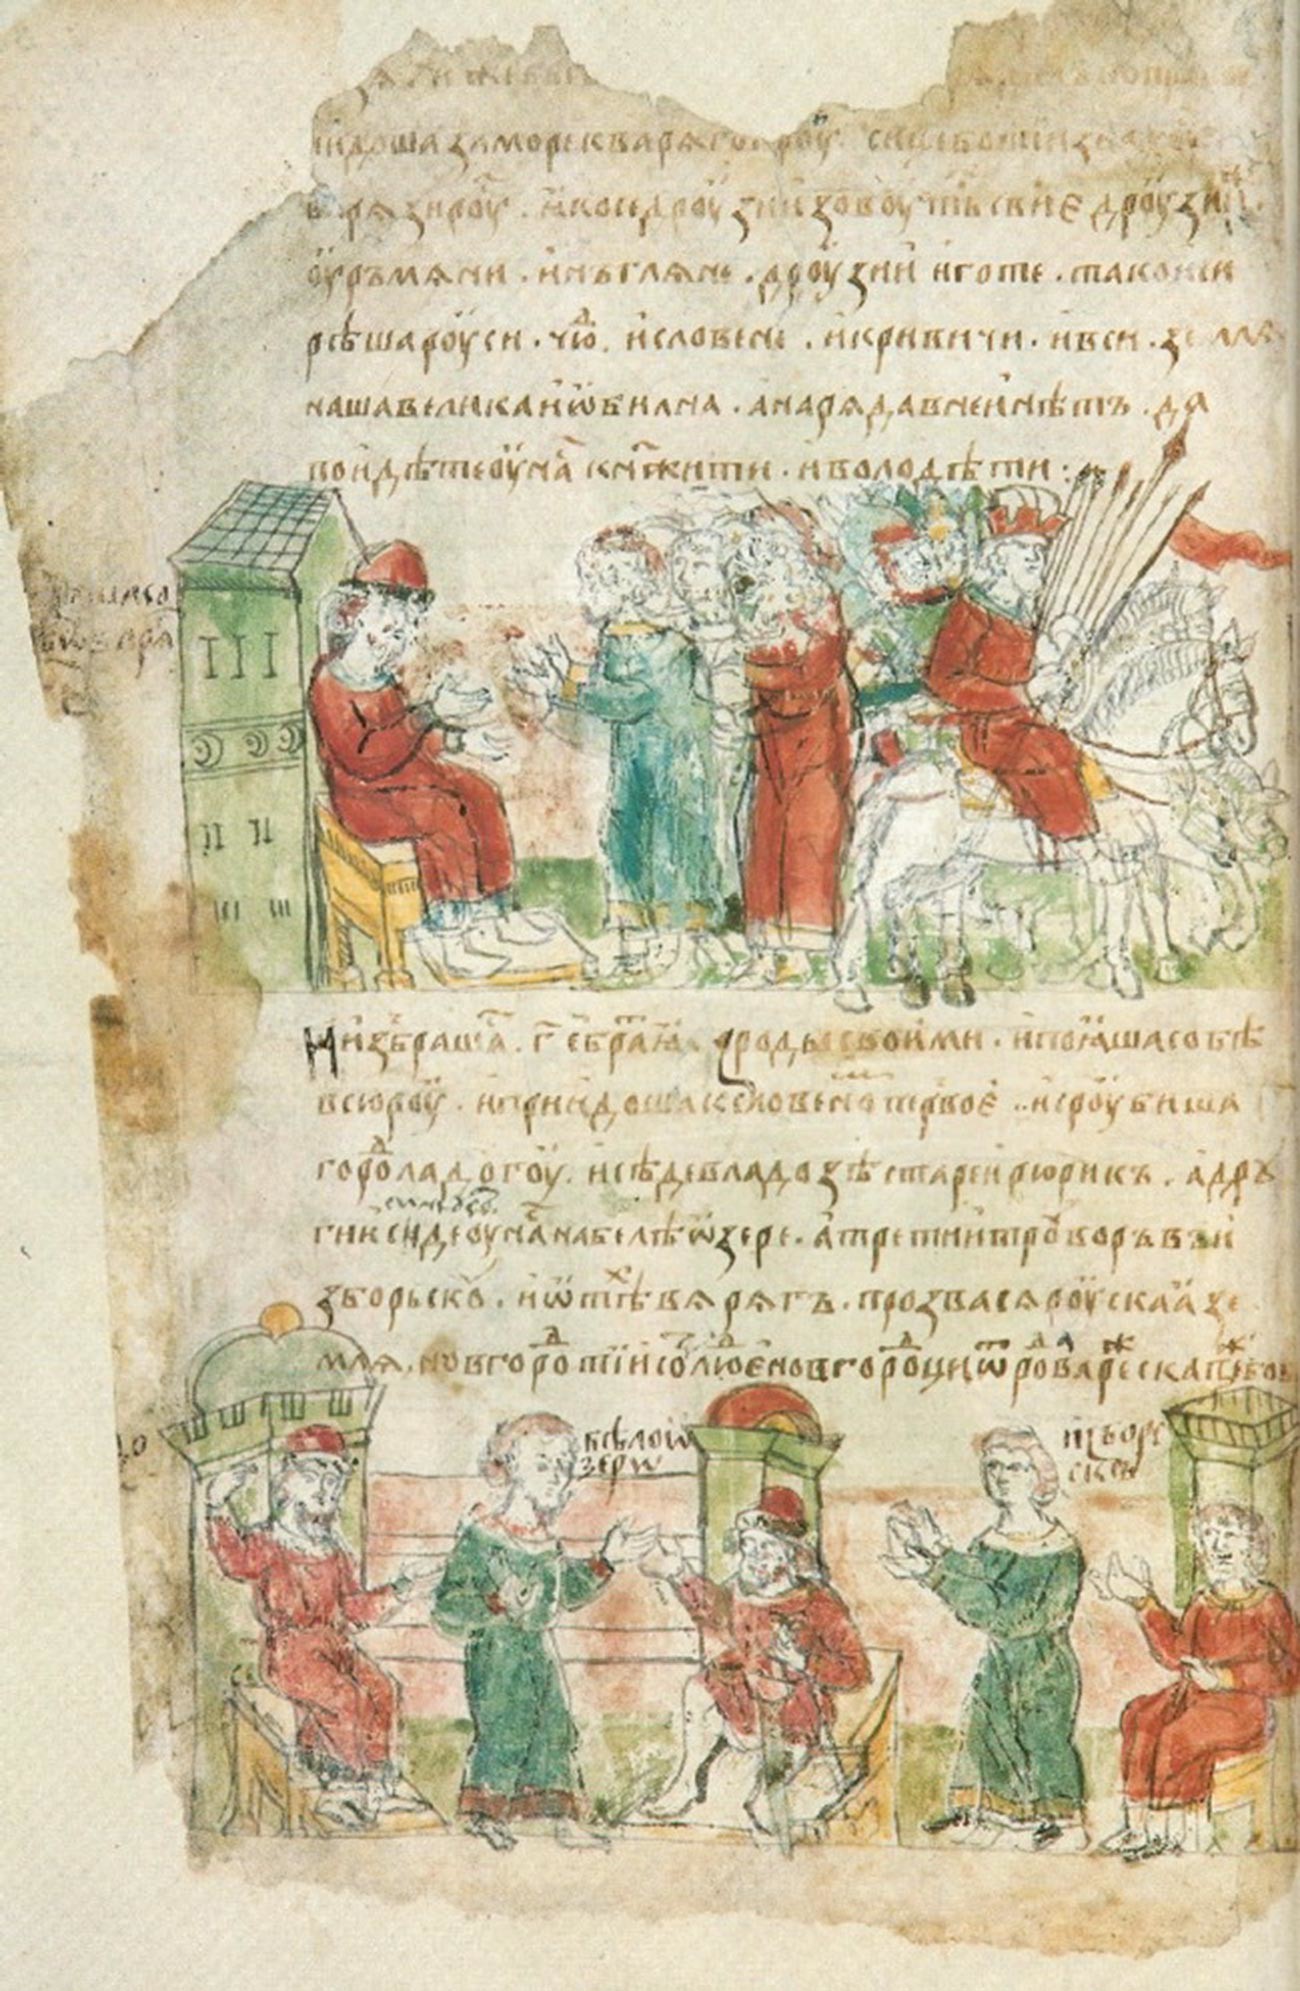 Povabilo Varjagov, miniatura iz Radziwillskega letopisa (15. stoletje)